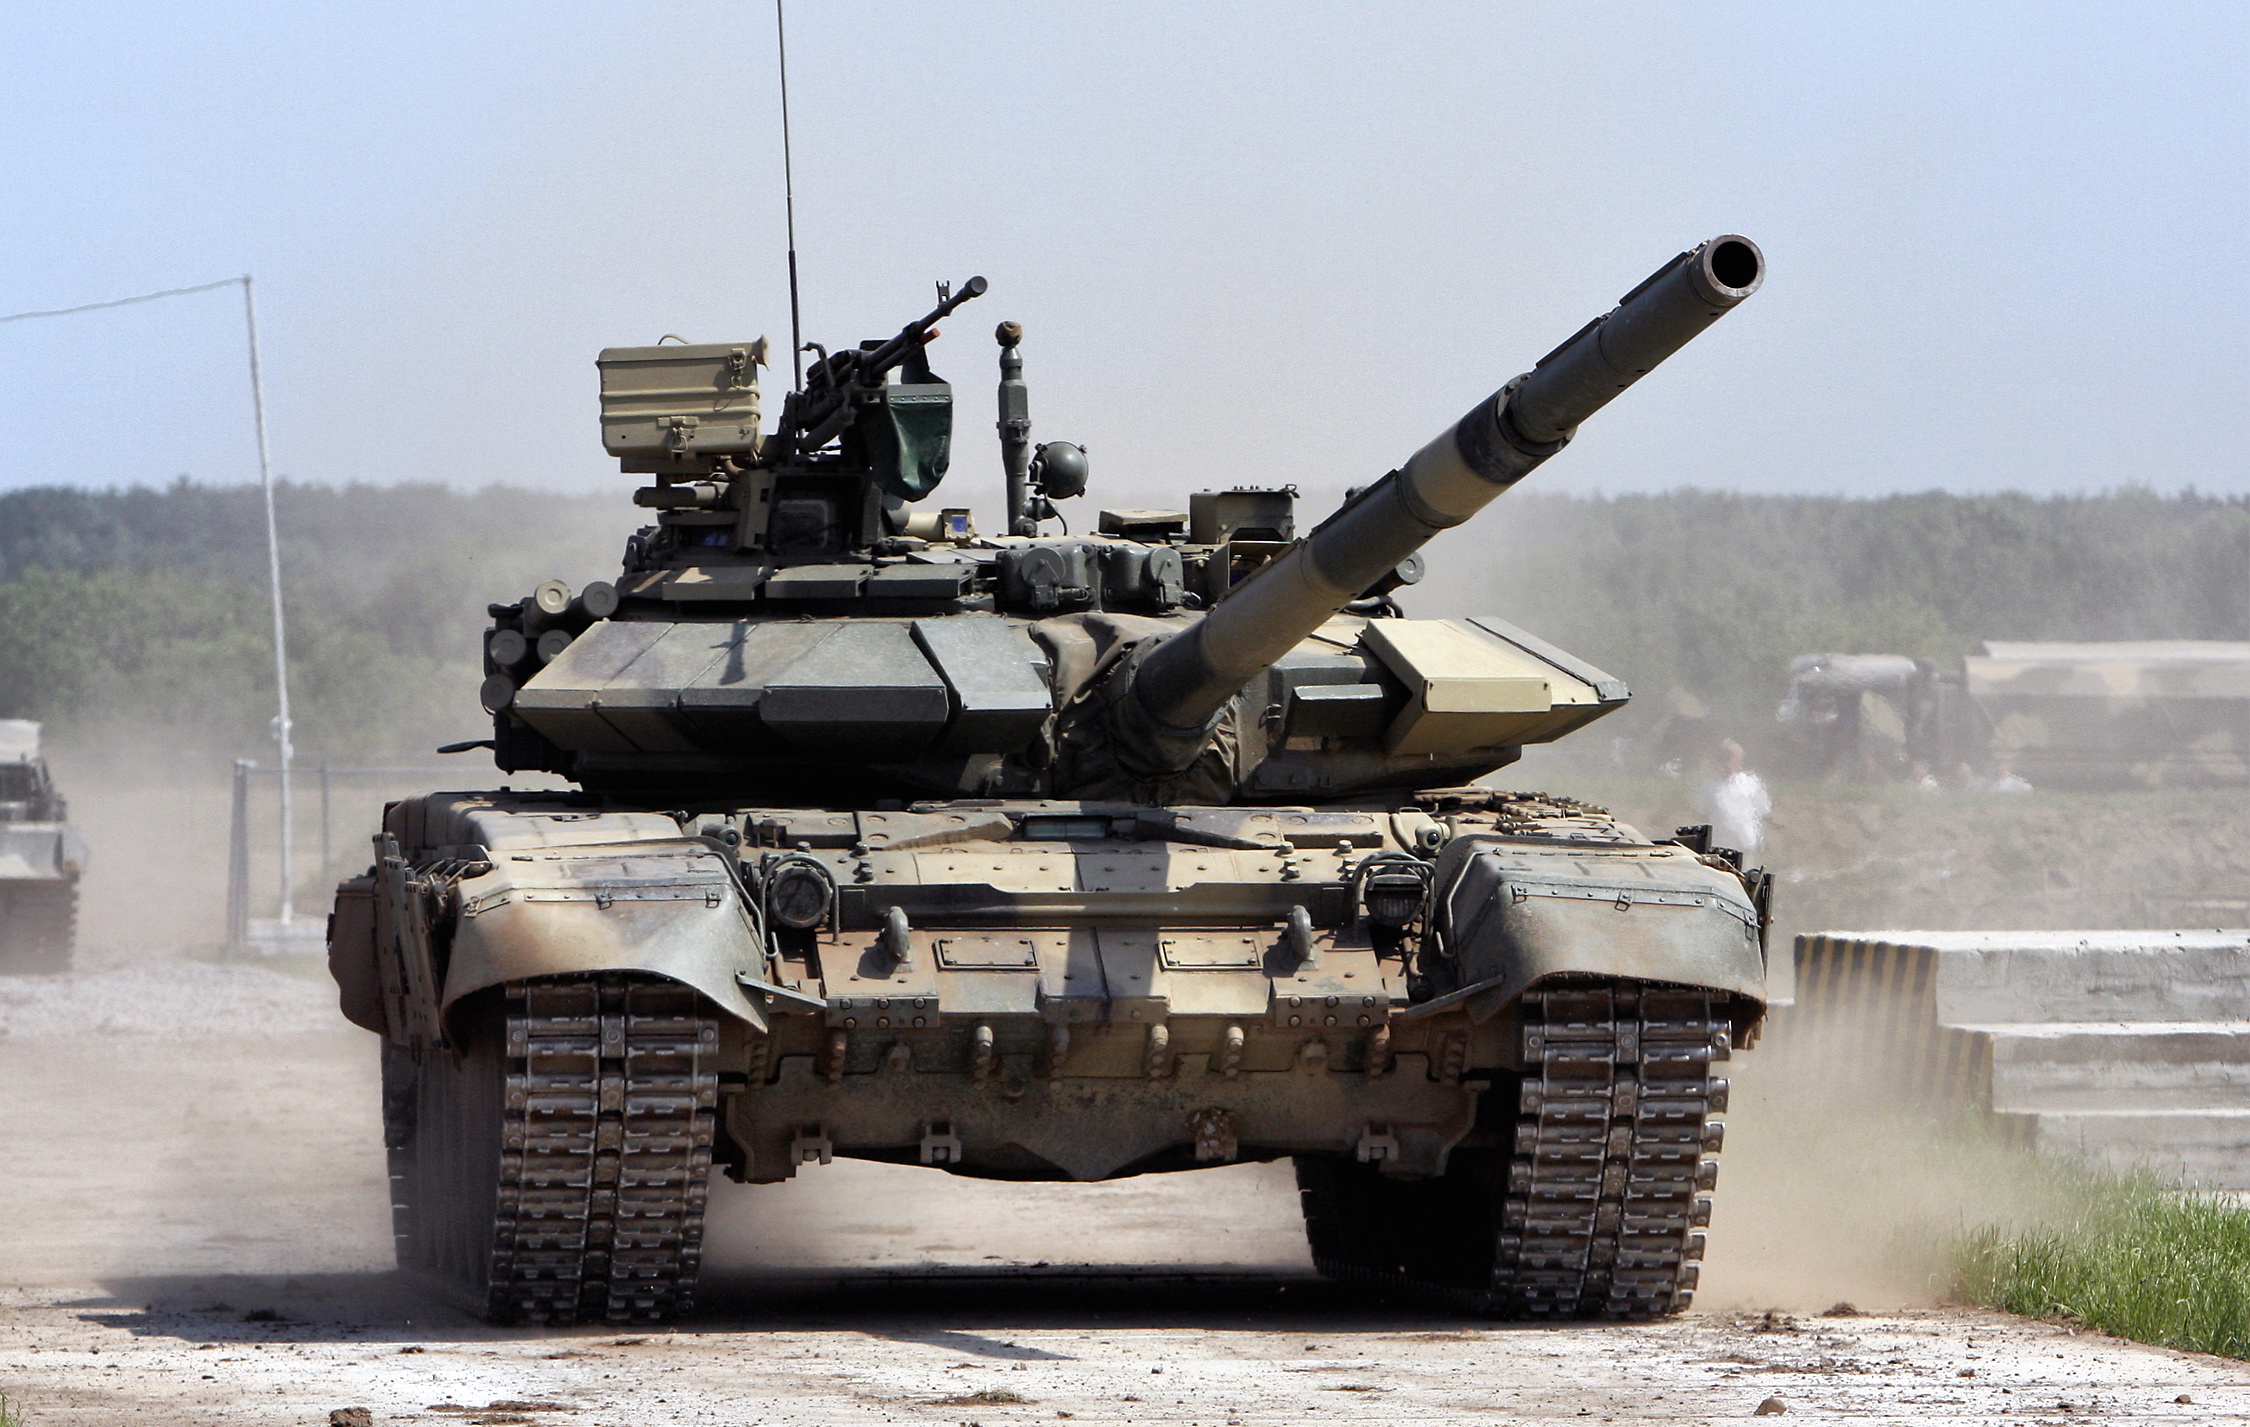 t-90s mbt tank carroarmato esportazione export india